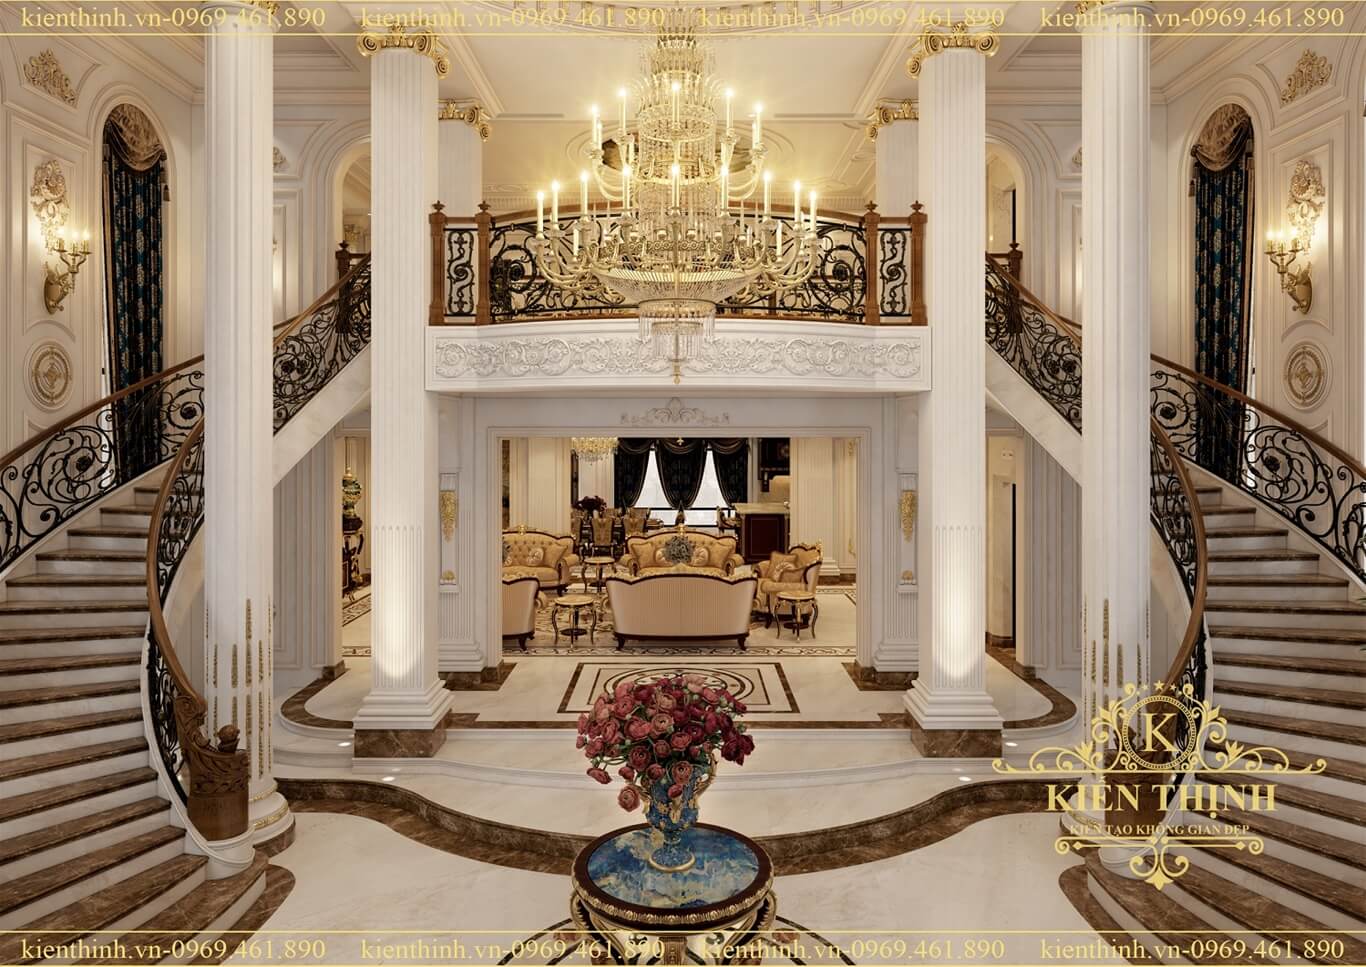 Mẫu thiết kế biệt thự 4 tầng phong cách tân cổ điển châu Âu đẳng cấp nội thất Hoàng Gia tại Hà Nội - BT1909